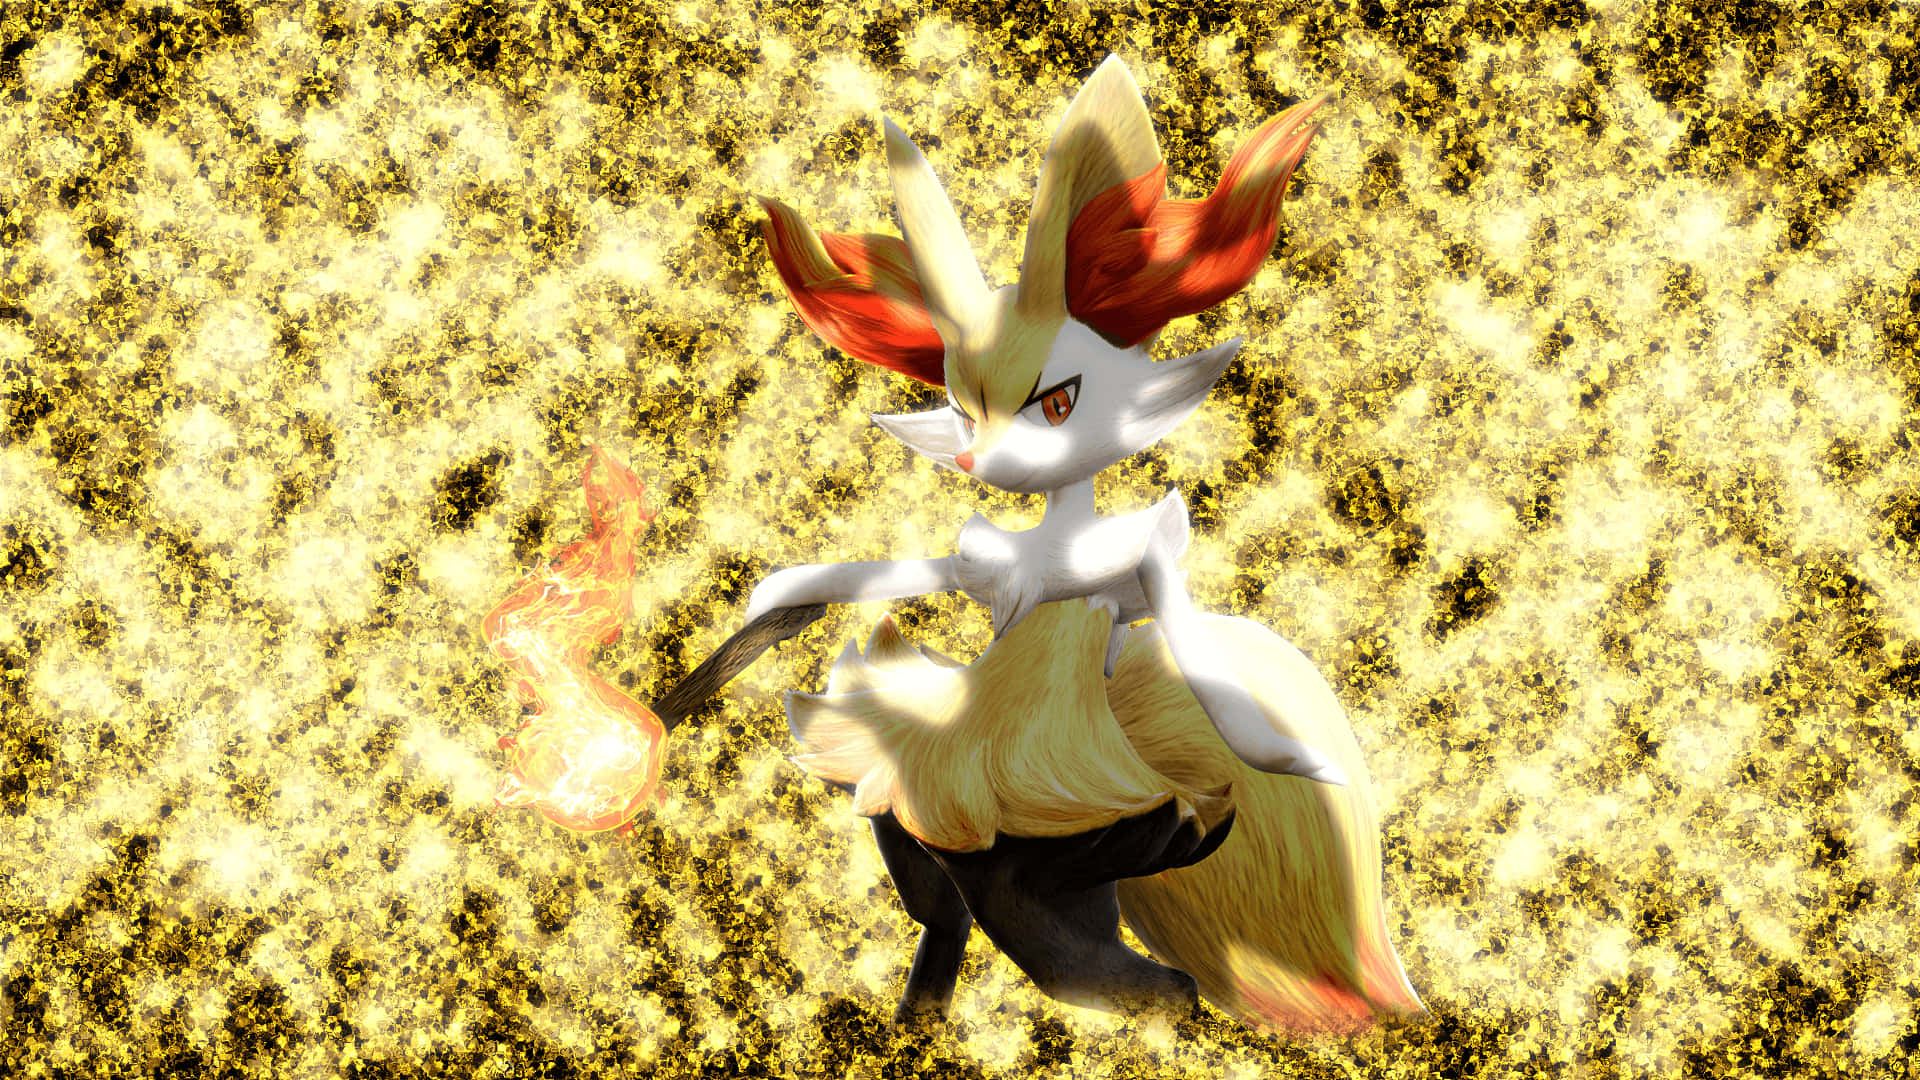 Braixen Emanating Fiery Energy In Pokemon Battle Wallpaper